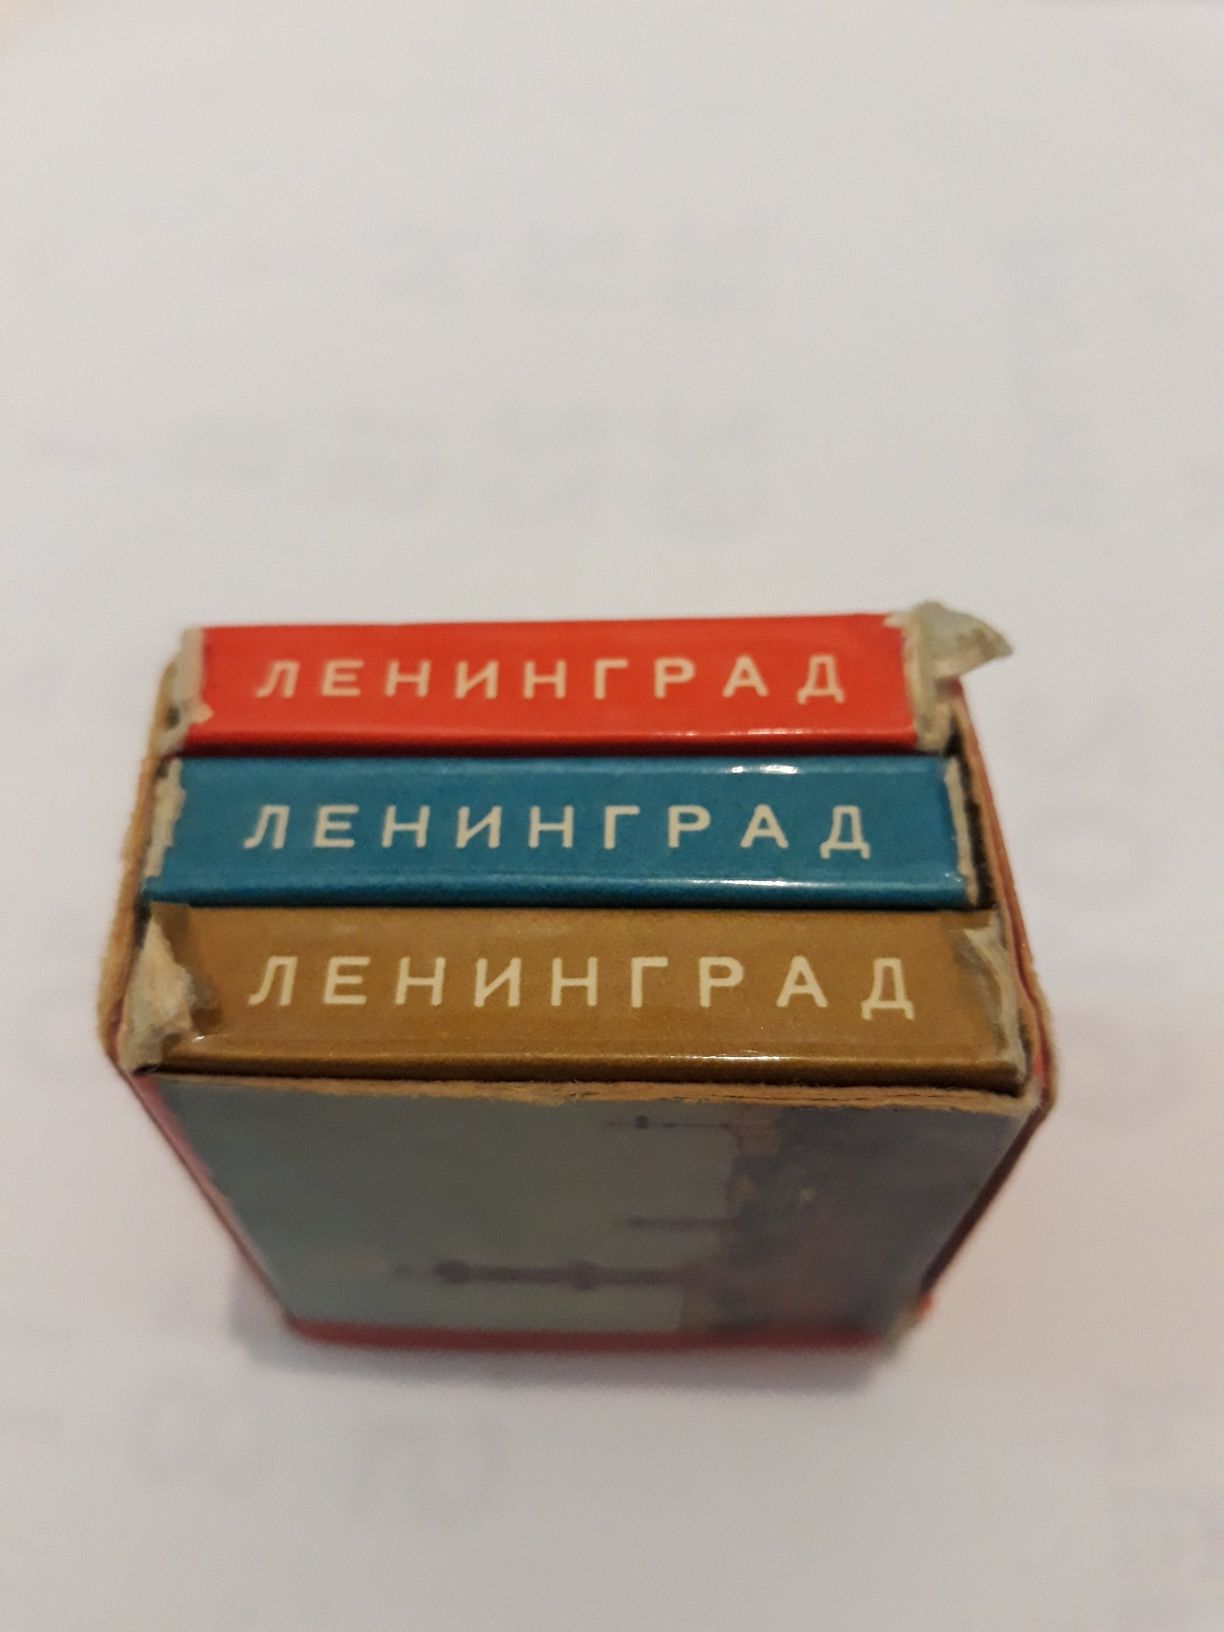 Ленинград, набор мини открыток раскладушек, открытка